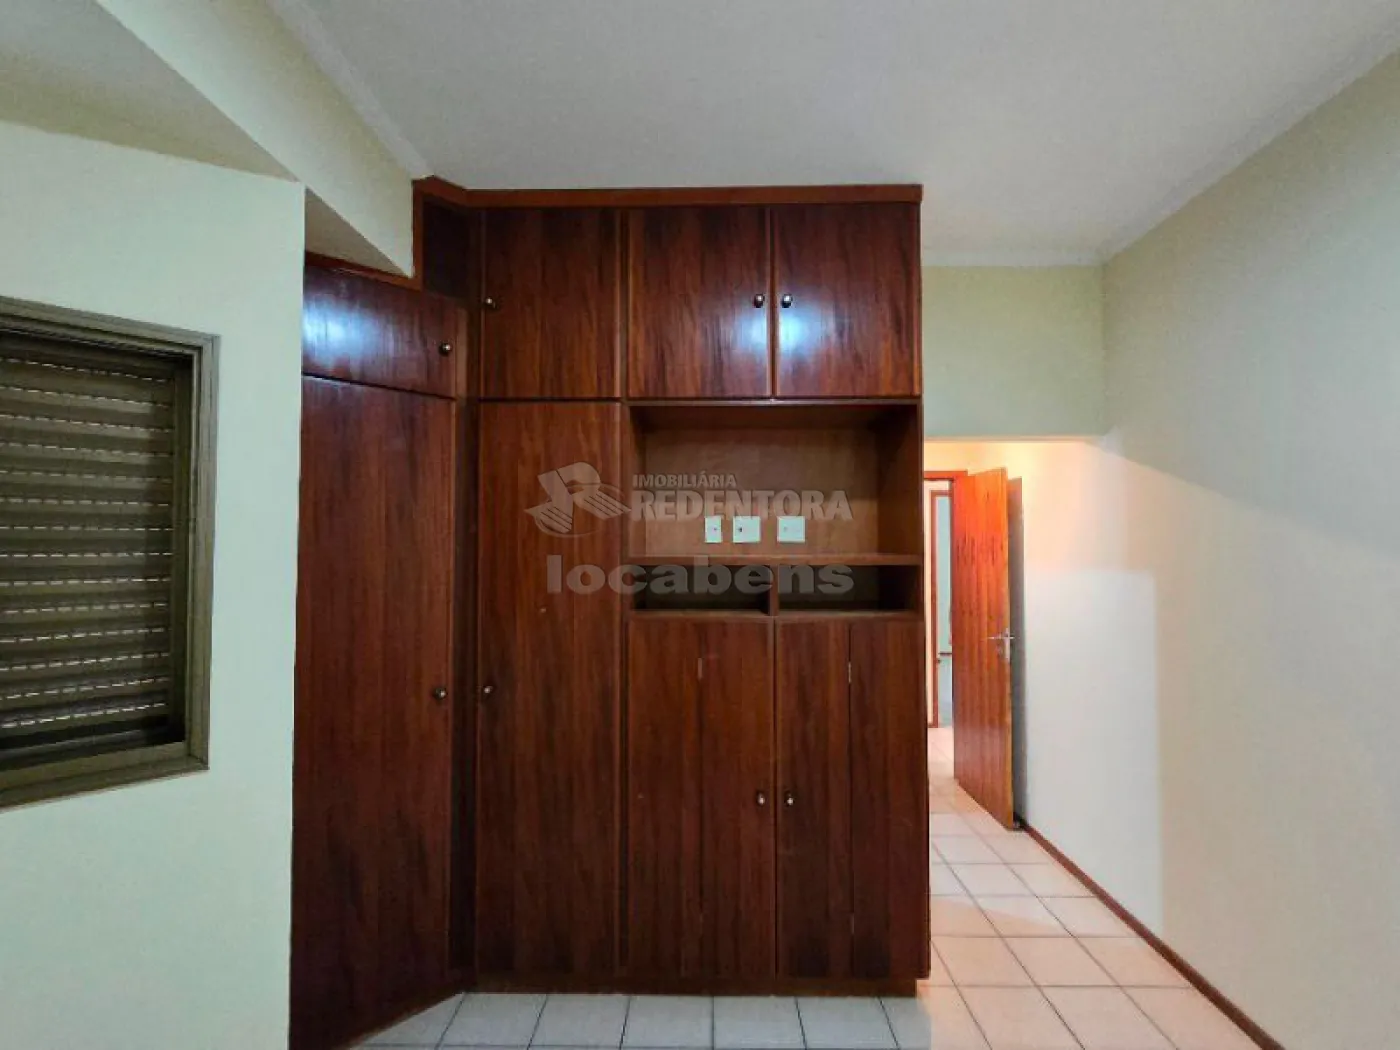 Comprar Apartamento / Padrão em São José do Rio Preto R$ 400.000,00 - Foto 10